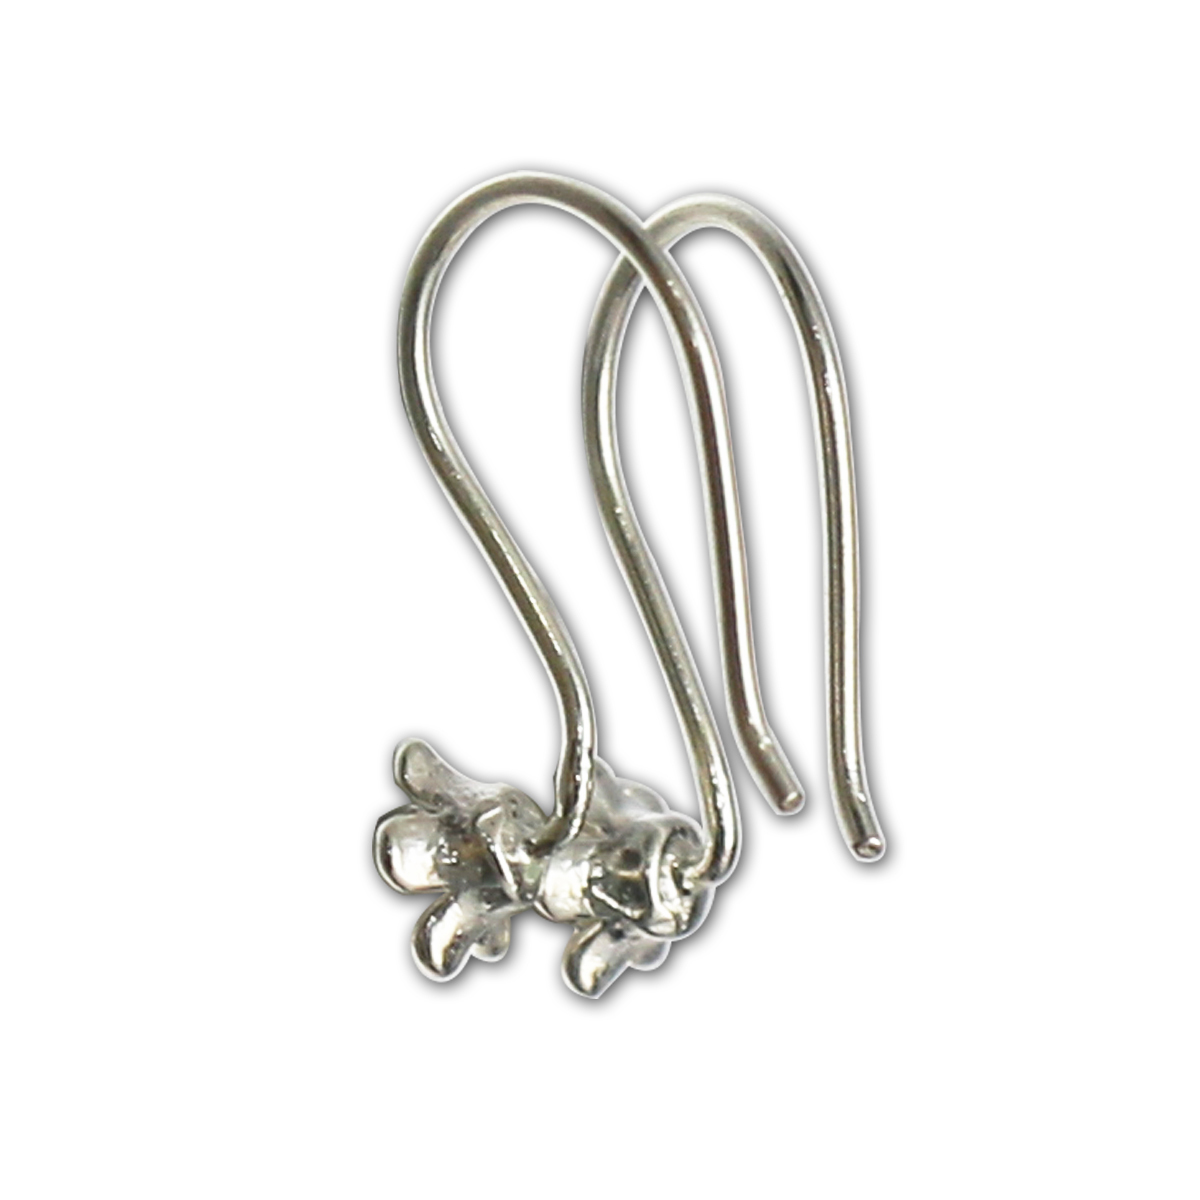 Silver earrings findings flower cabochon settings